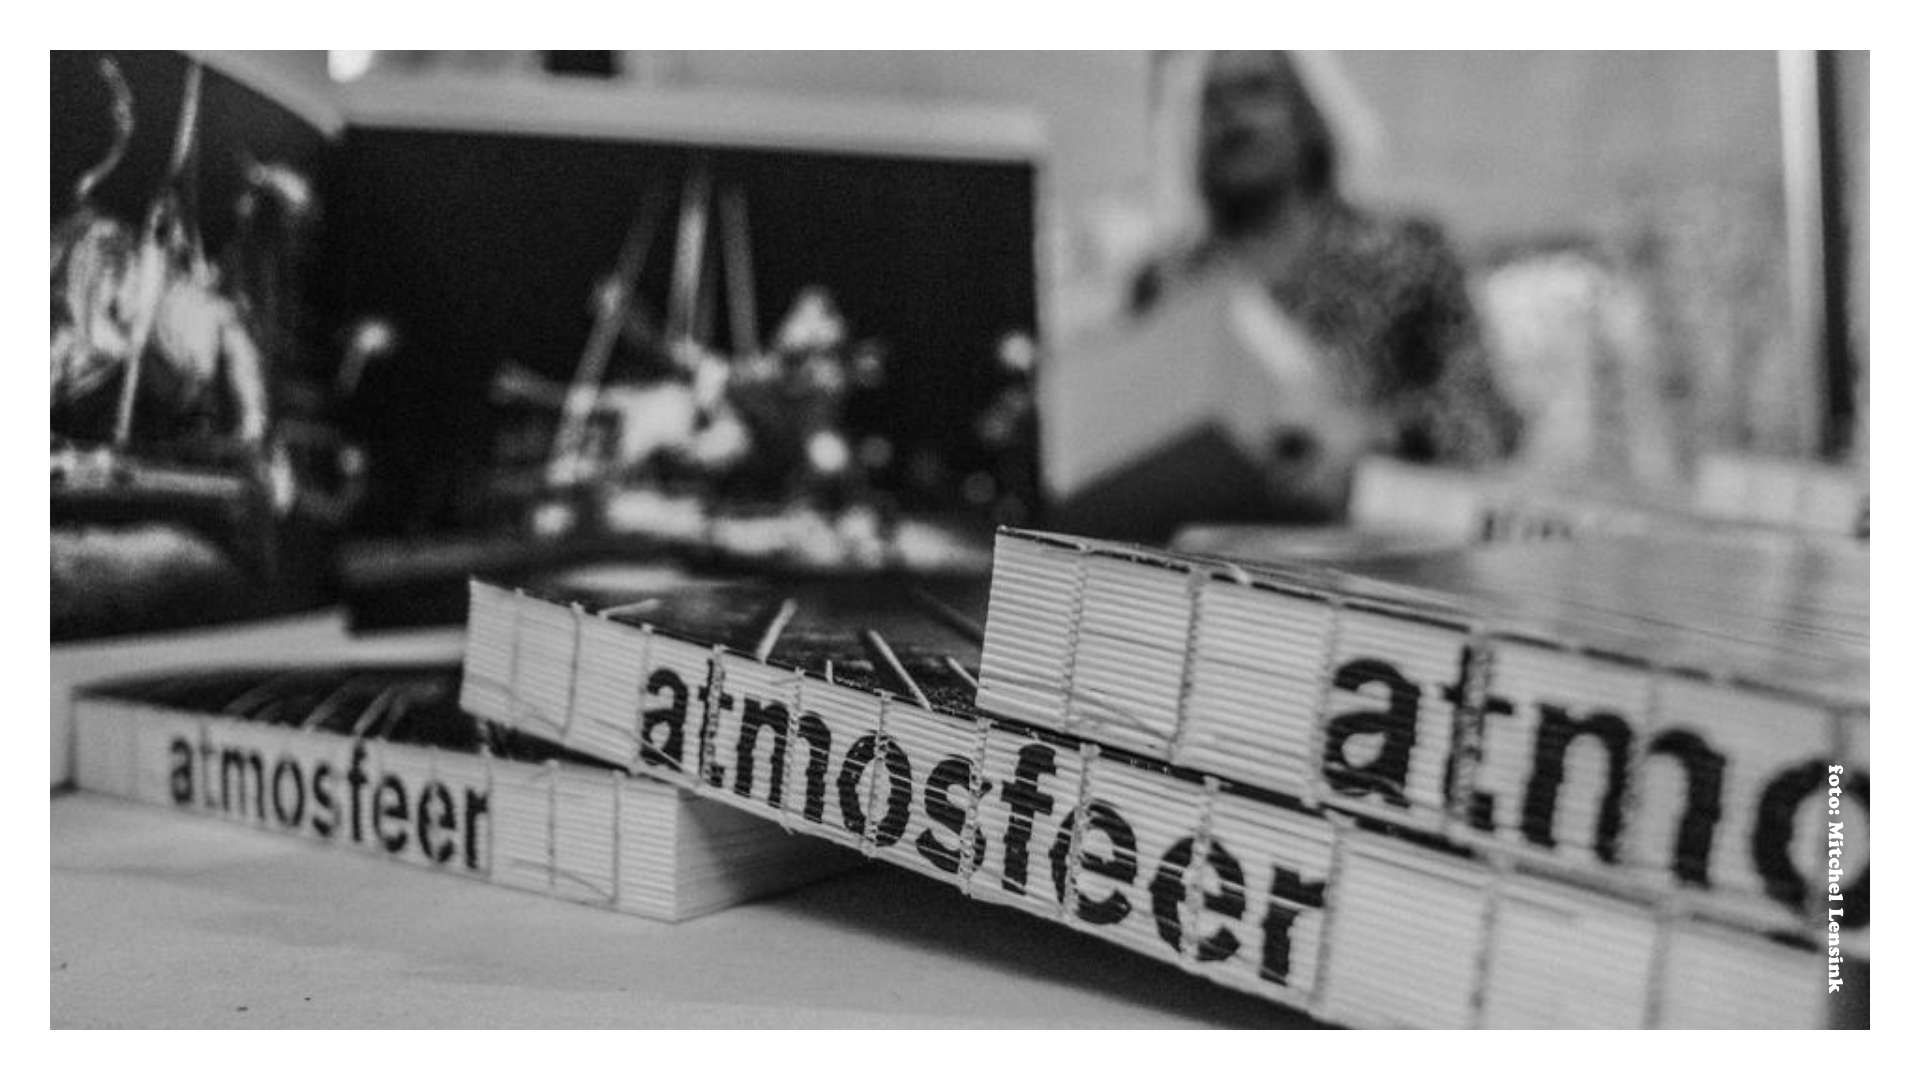 Boekontwerp voor het boek Atmosfeer, ontworpen in opdracht van kunstenaarscollectief ATMosphere (Antal Bos, Marisja Smit en Thijs Trompert). Het boek werd geschreven door Thijs Tomassen en de fotografie werd verzorgd door Frans Kanters. Het boek werd gedrukt en afgewerkt door Drukkerij Wilco in Amersfoort.